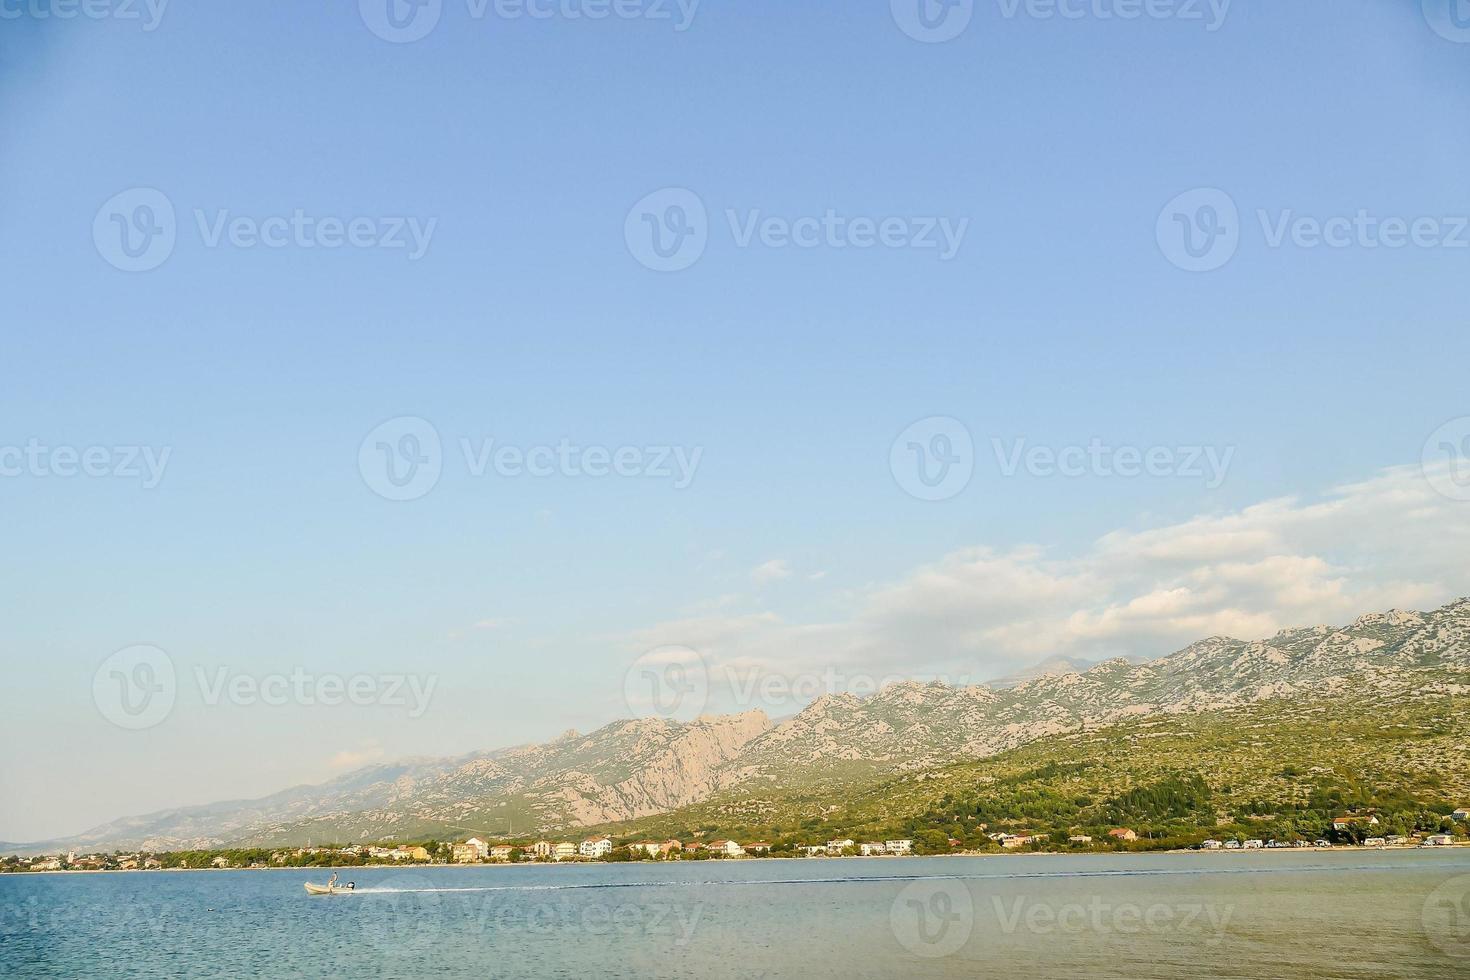 el mar adriático en croacia foto